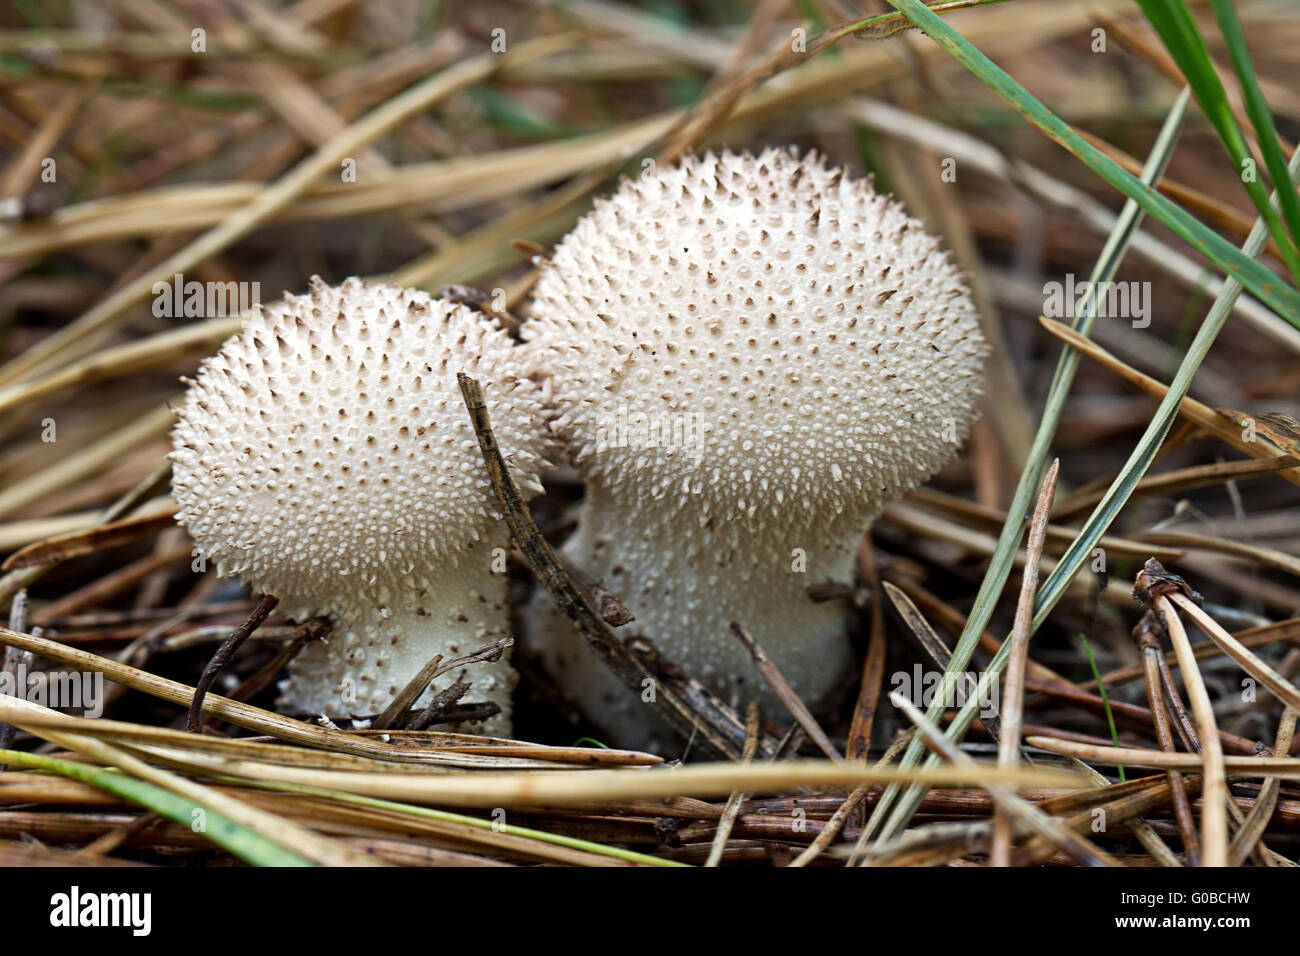 Fuzz-ball i funghi di bosco Foto Stock